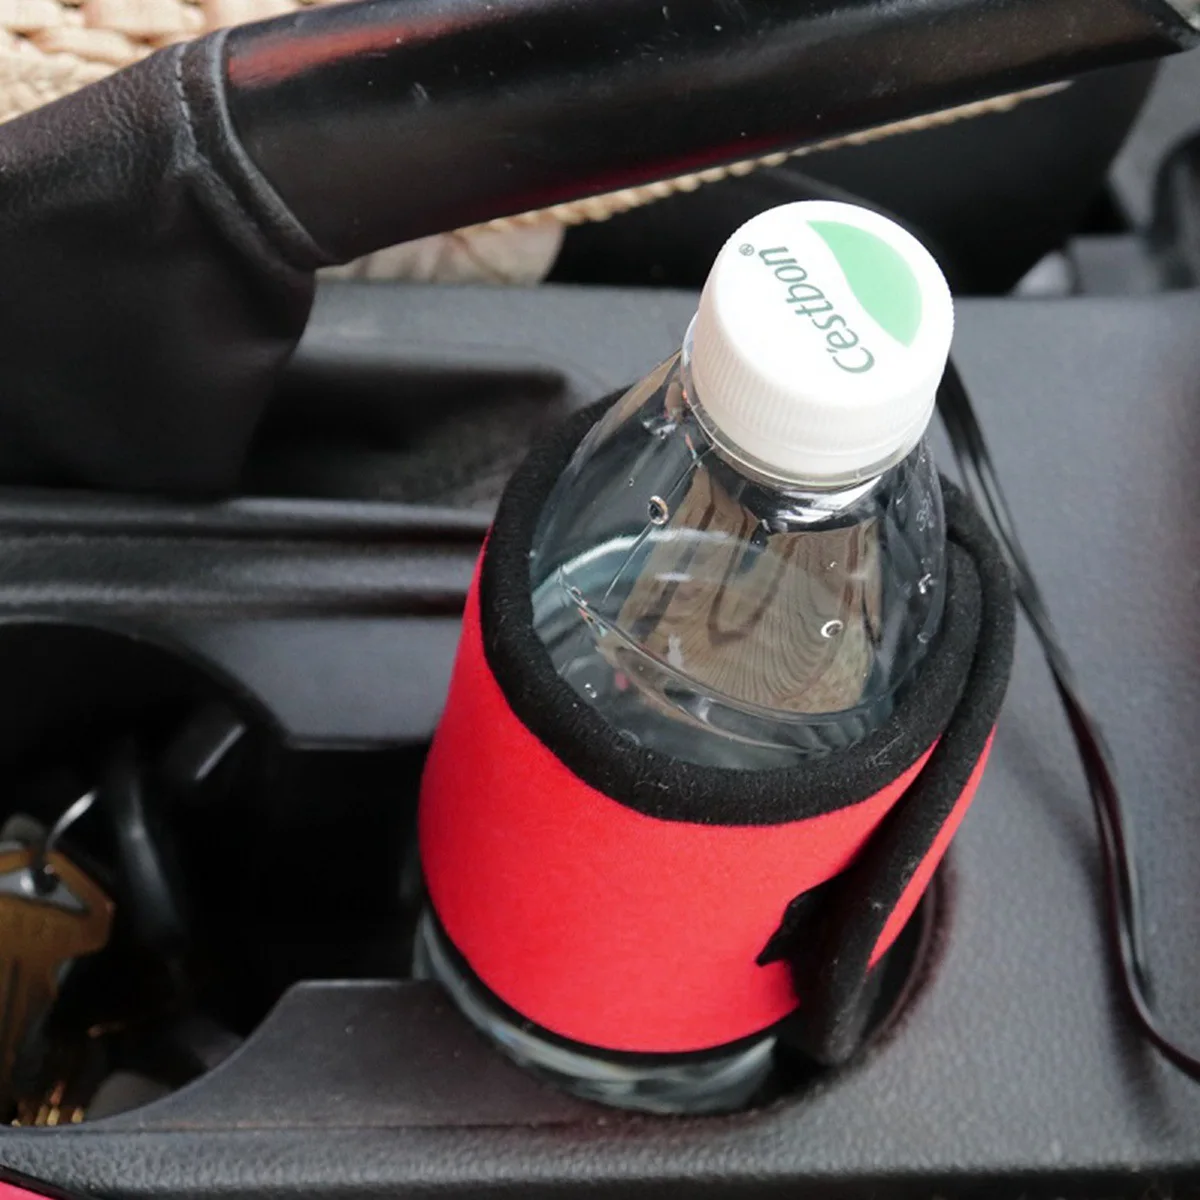 12 В 24 в автомобиль; для напитков грелка Coffe детский сменный картридж нагреватель Универсальный детское питание молоко чай изоляционные сумки для авто путешествия на открытом воздухе